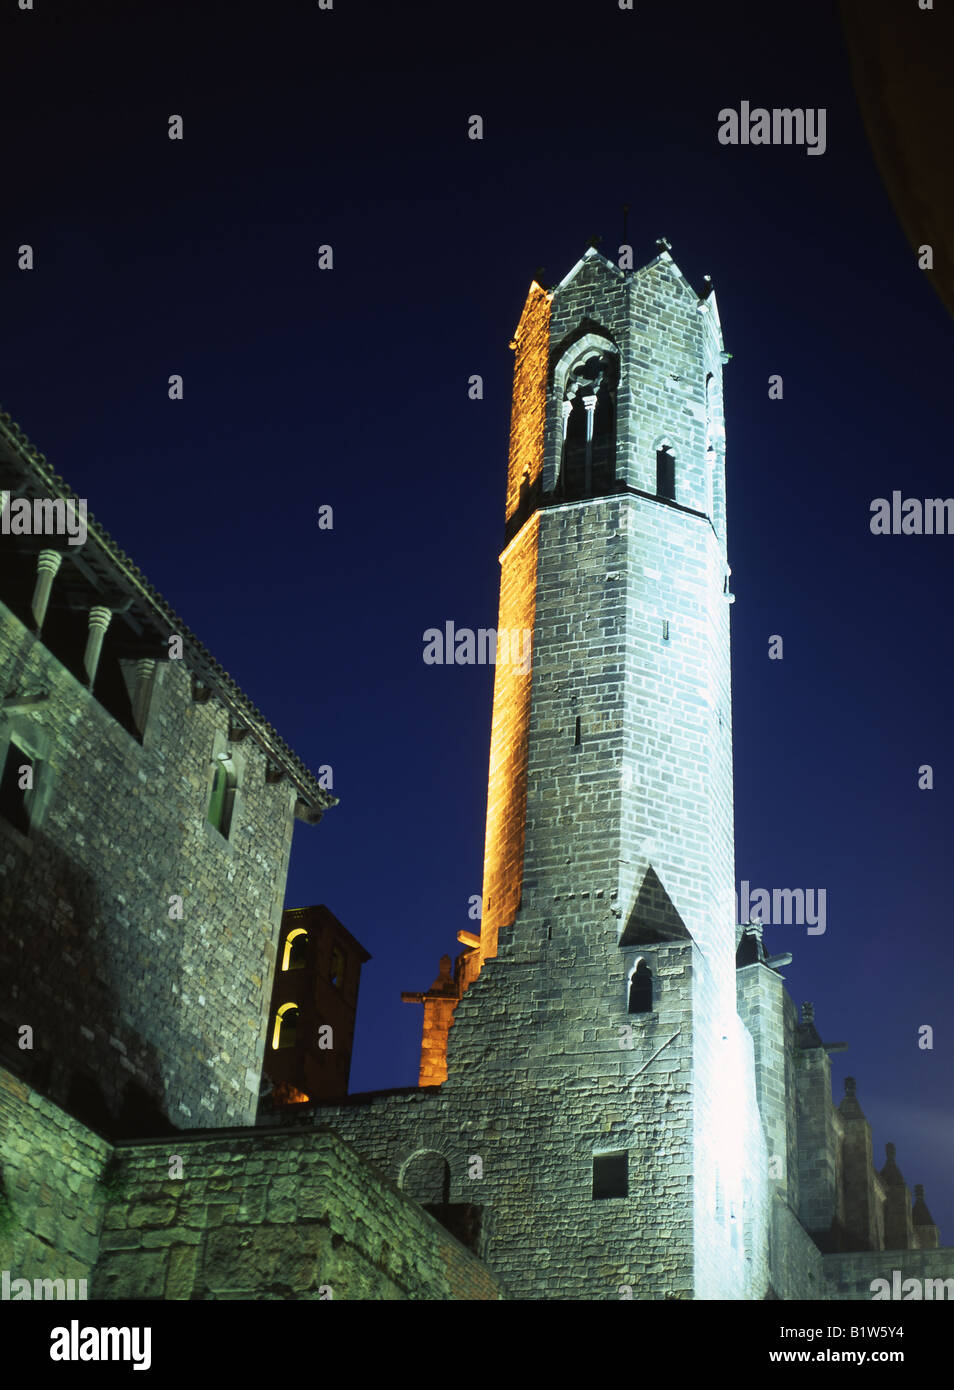 Capella de Sant'Agata at night Barri Gotic Barcelona Catalunya Spain Stock Photo